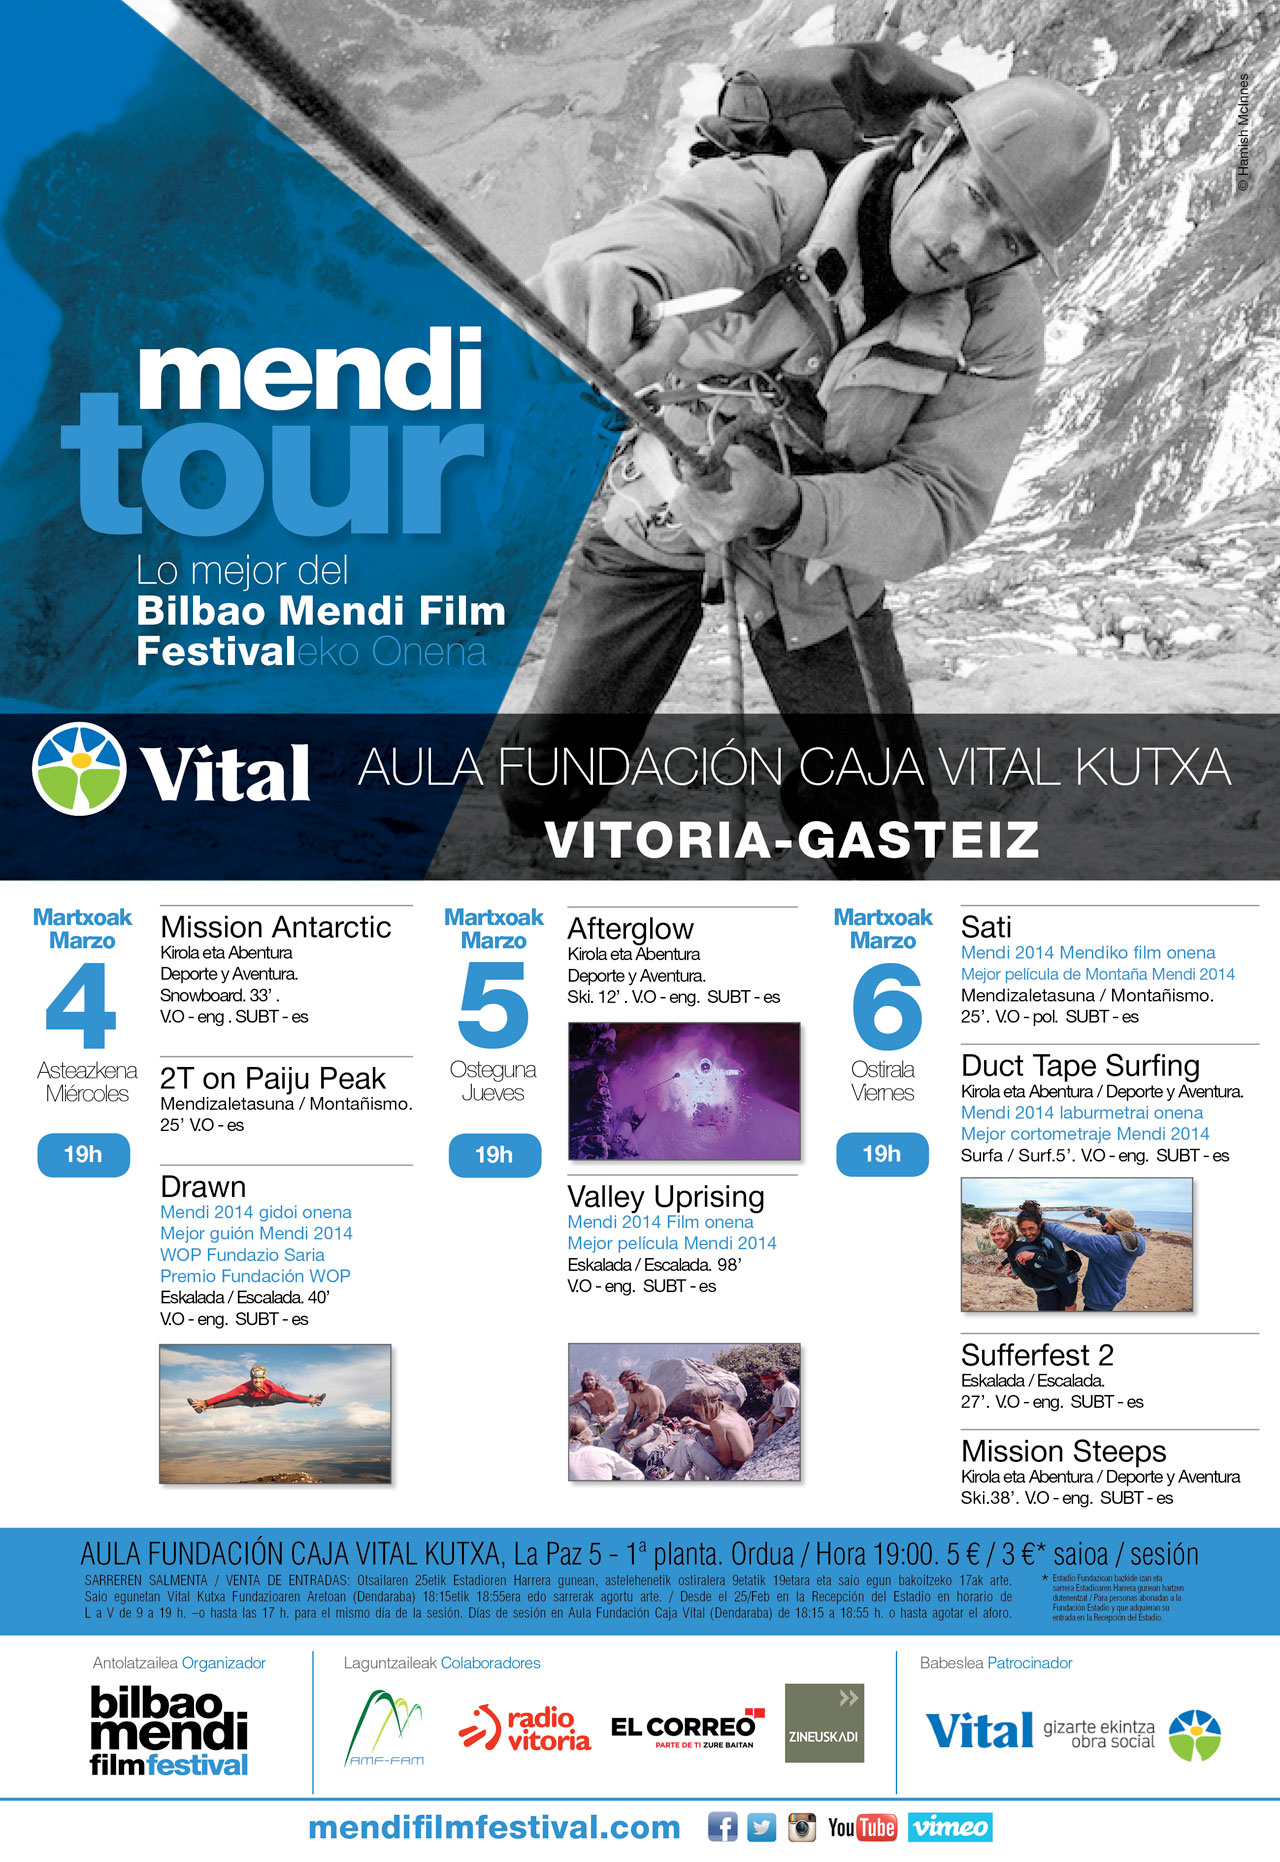 Mendi Tour Vitoria-Gasteiz 2015